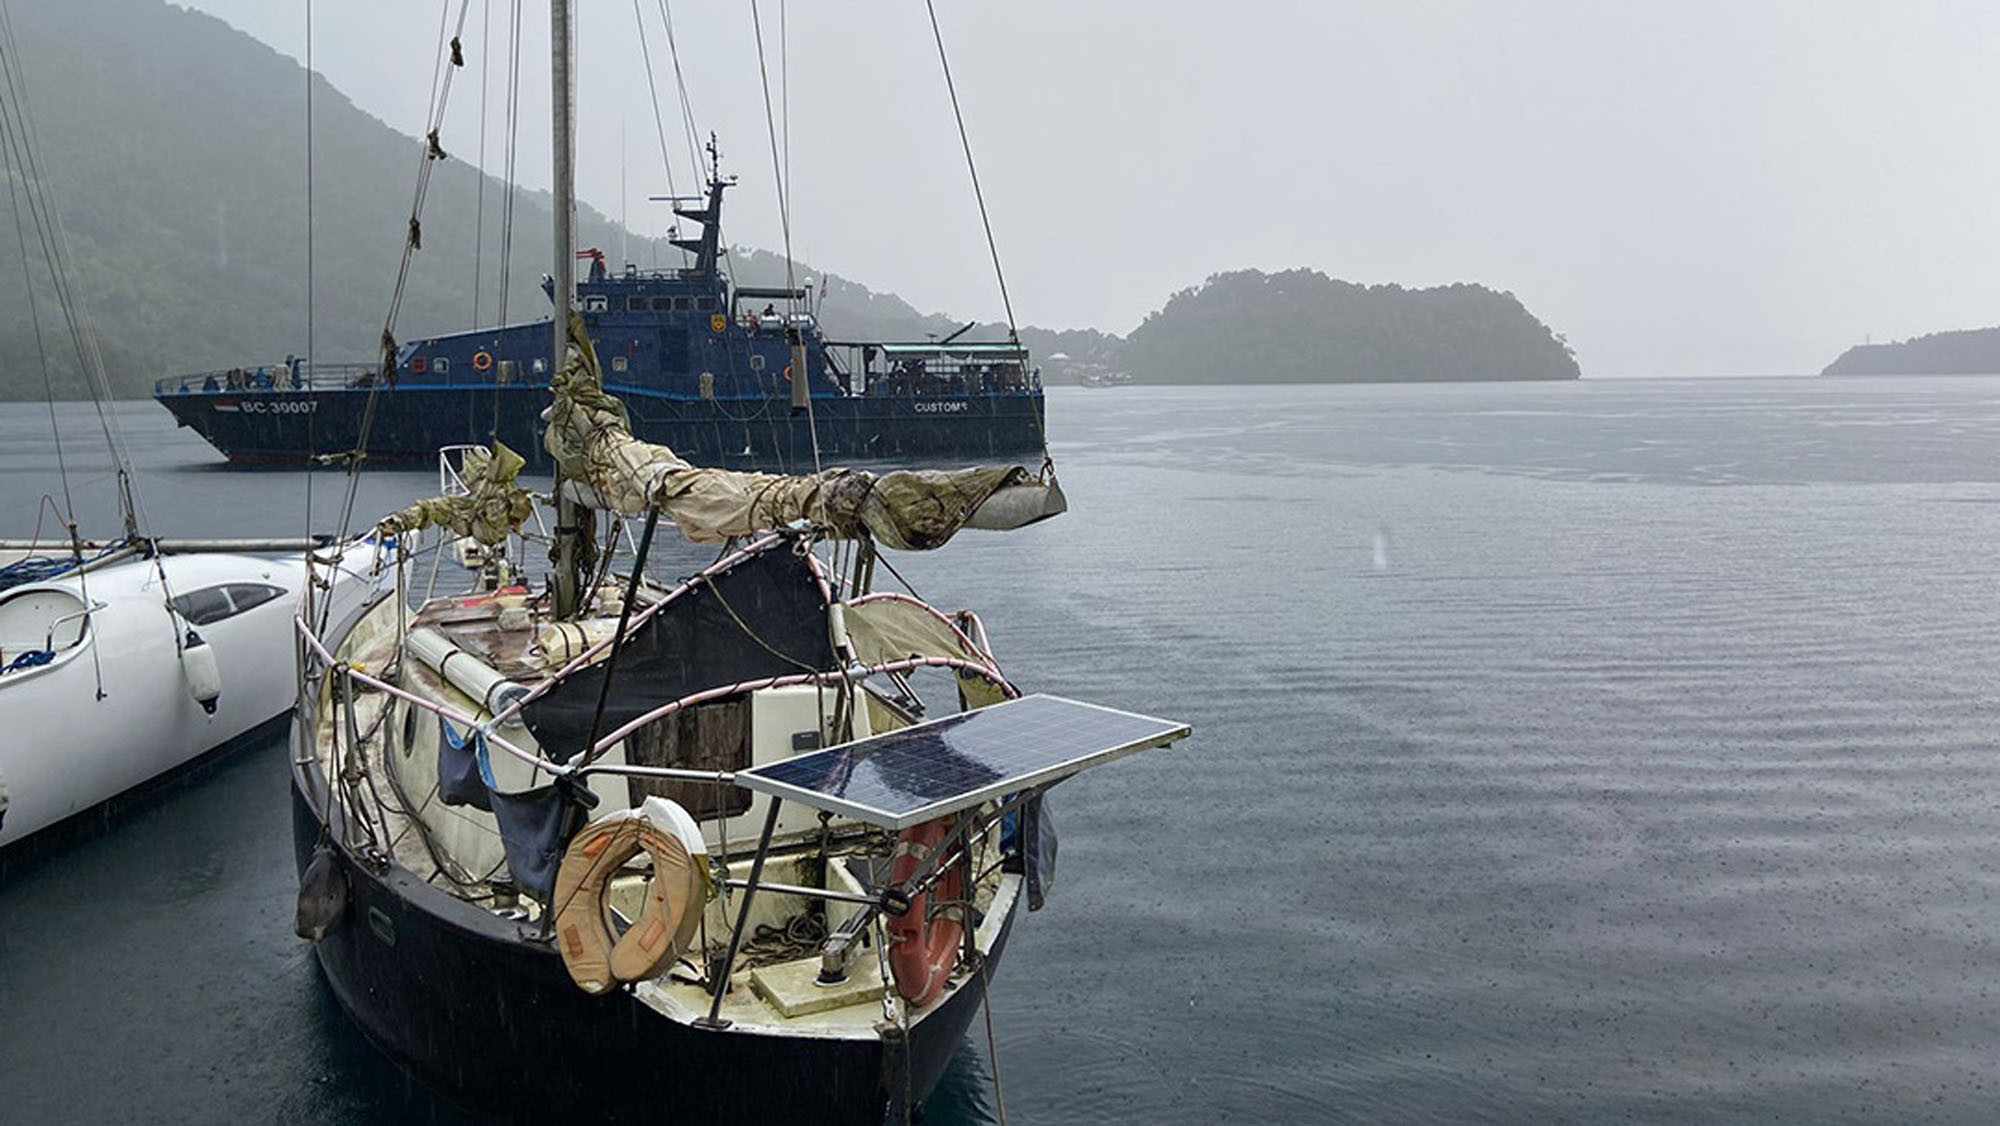 Bea Cukai Amankan Kapal Wisata Asing Berbendera Australia di Perairan Banda Neira - JPNN.com